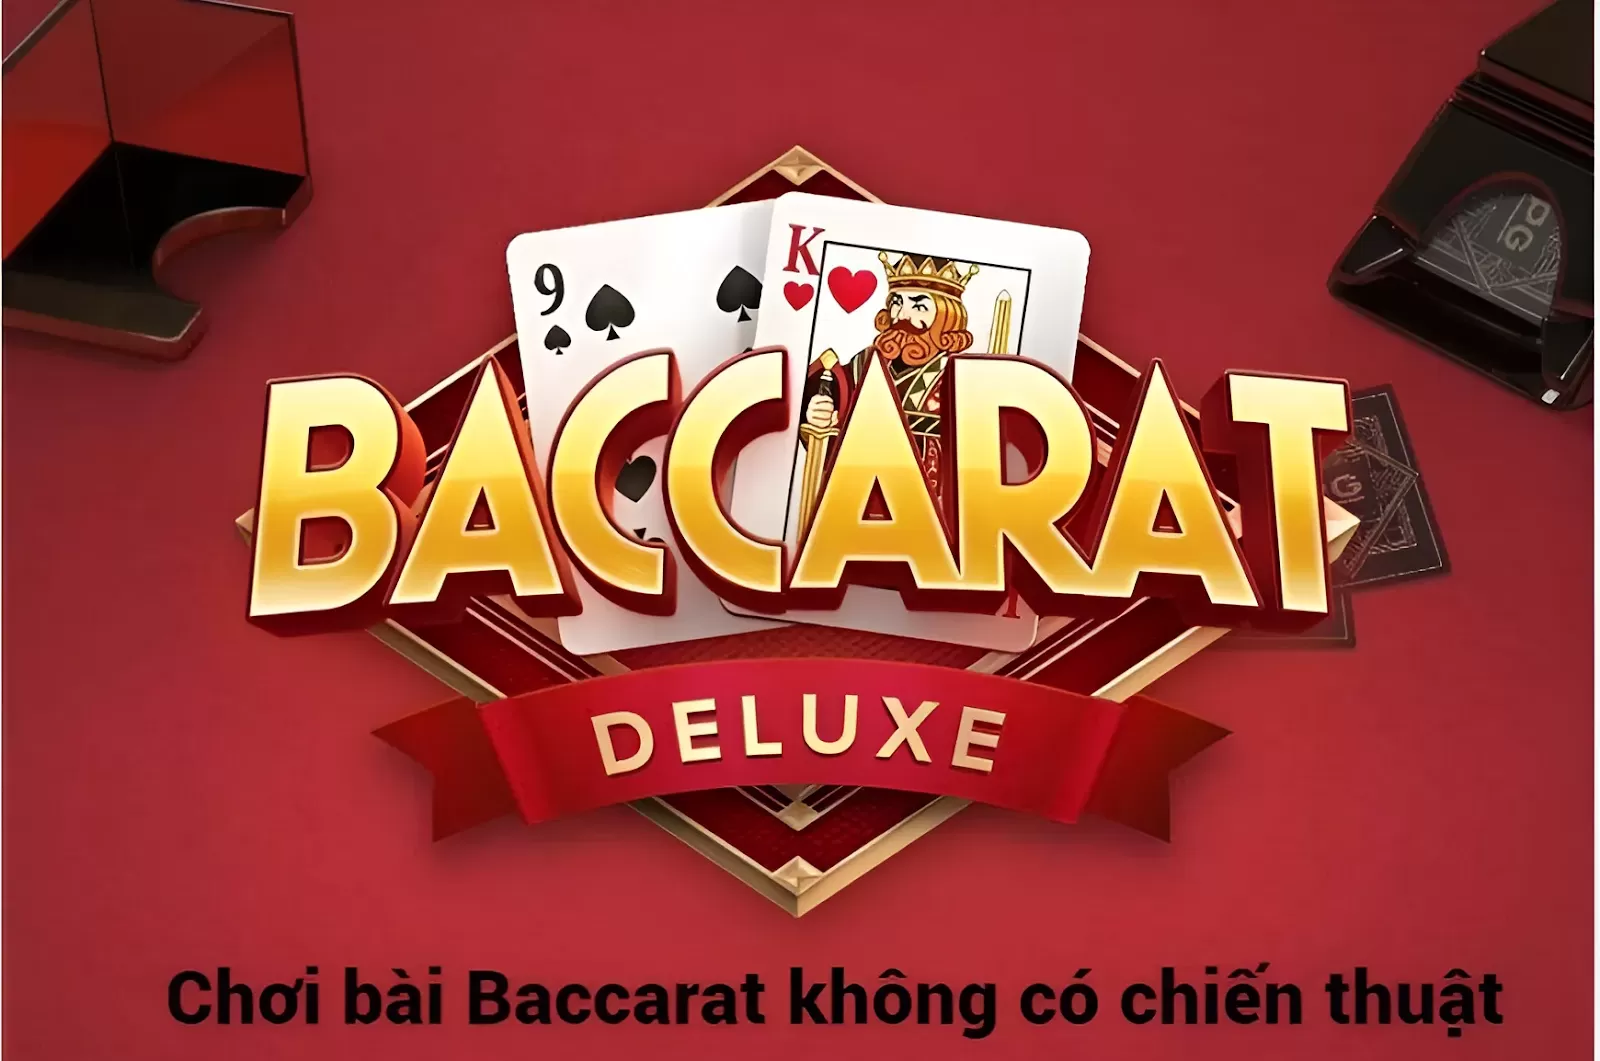 Hé lộ 5 lý do khiến bạn chơi Baccarat online toàn thua